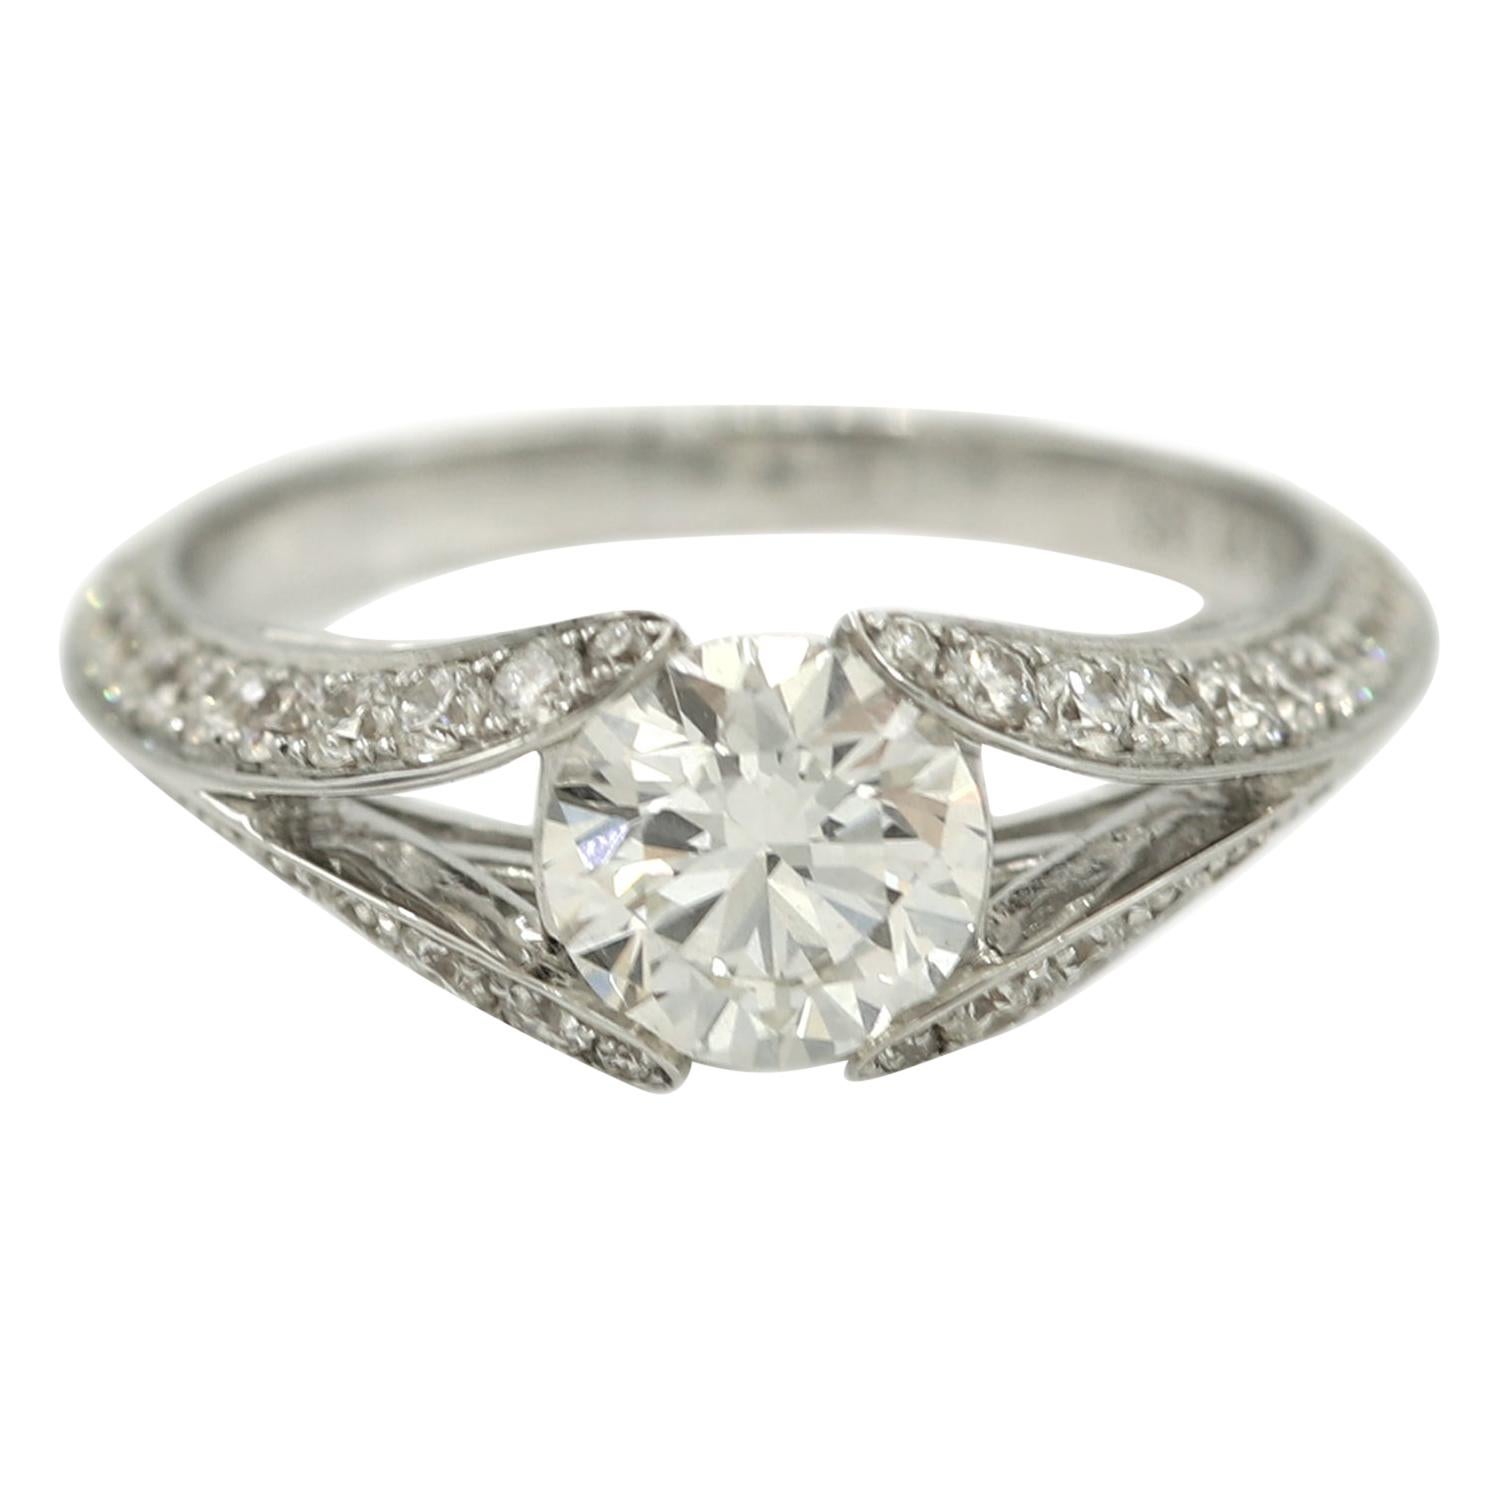 Embedded Diamond in Design Ring 1.04 Carat GIA Certificate 18 Karat White Gold